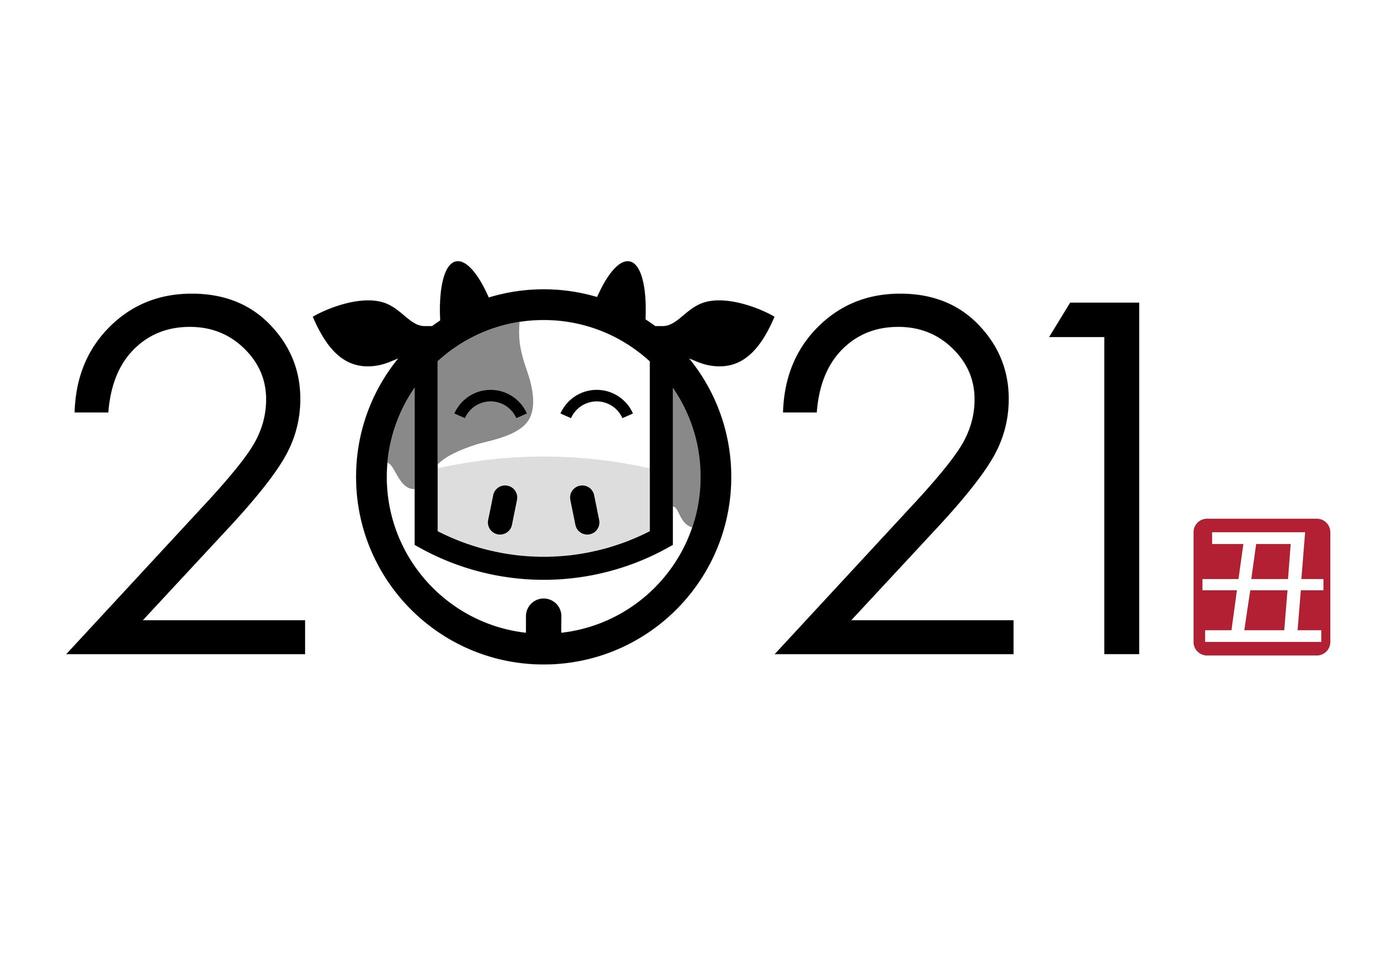 2021 anno del design delle lettere di bue vettore